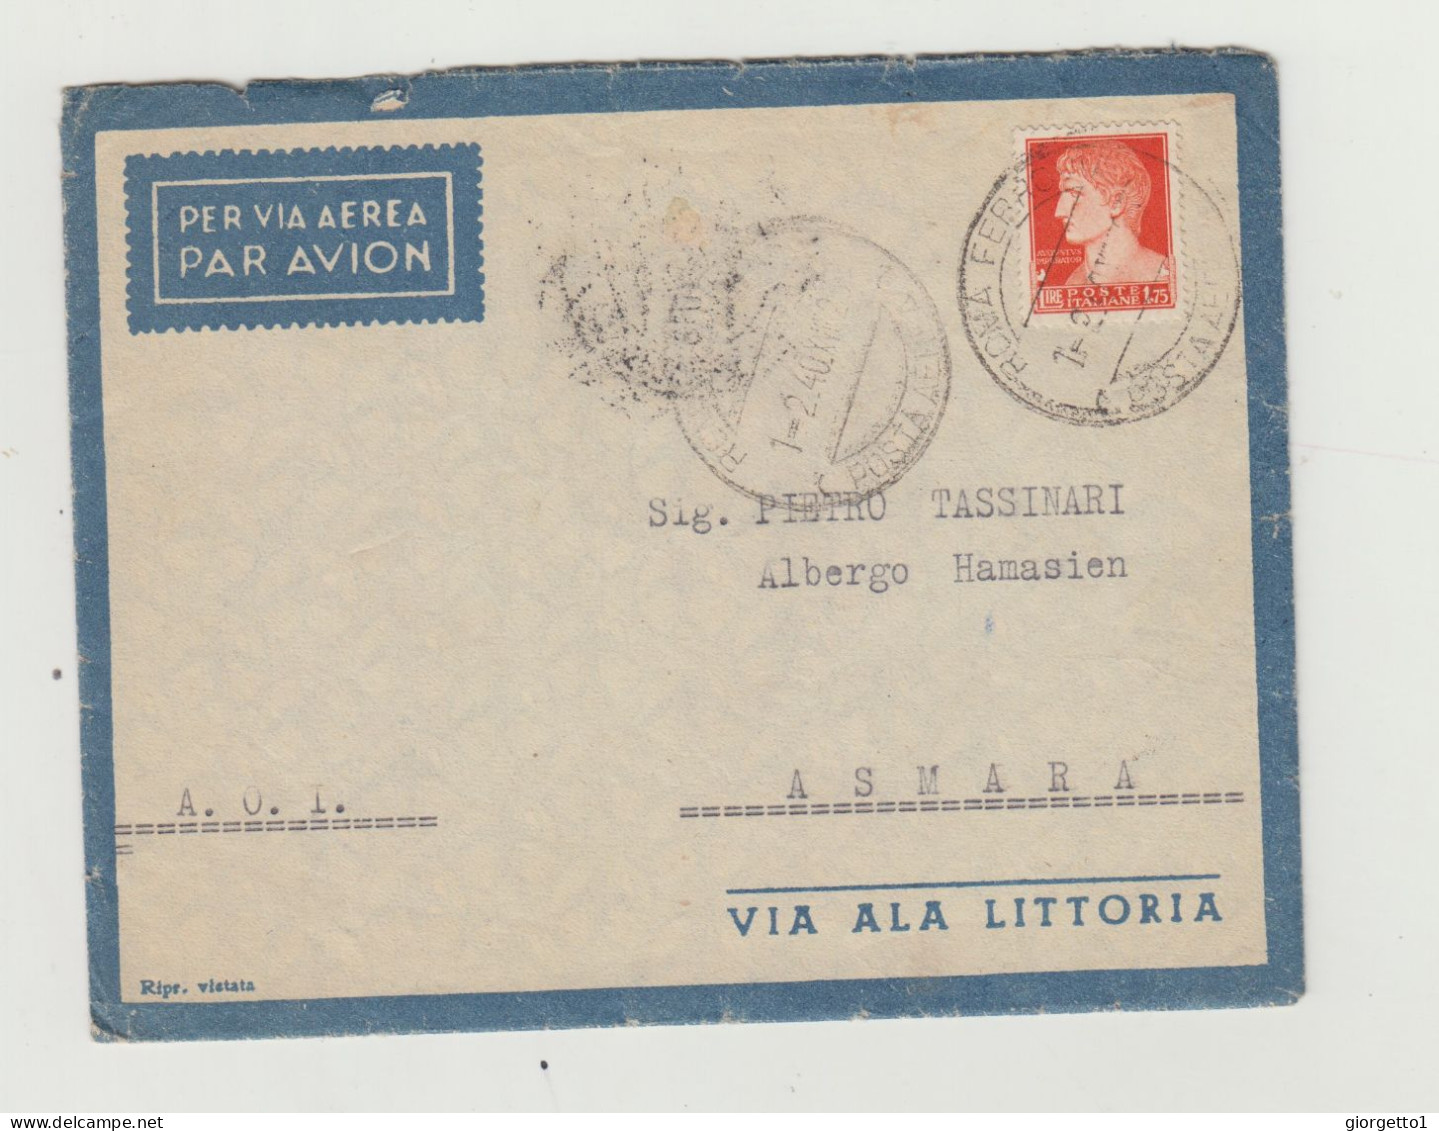 BUSTA CON LETTERA - VIA ALA LITTORIA - ERITREA VIAGGIATA  NEL 1940 VERSO ASMARA DA ROMA WW2 A.O.I.- COLONIA ERITREA - Marcophilie (Avions)